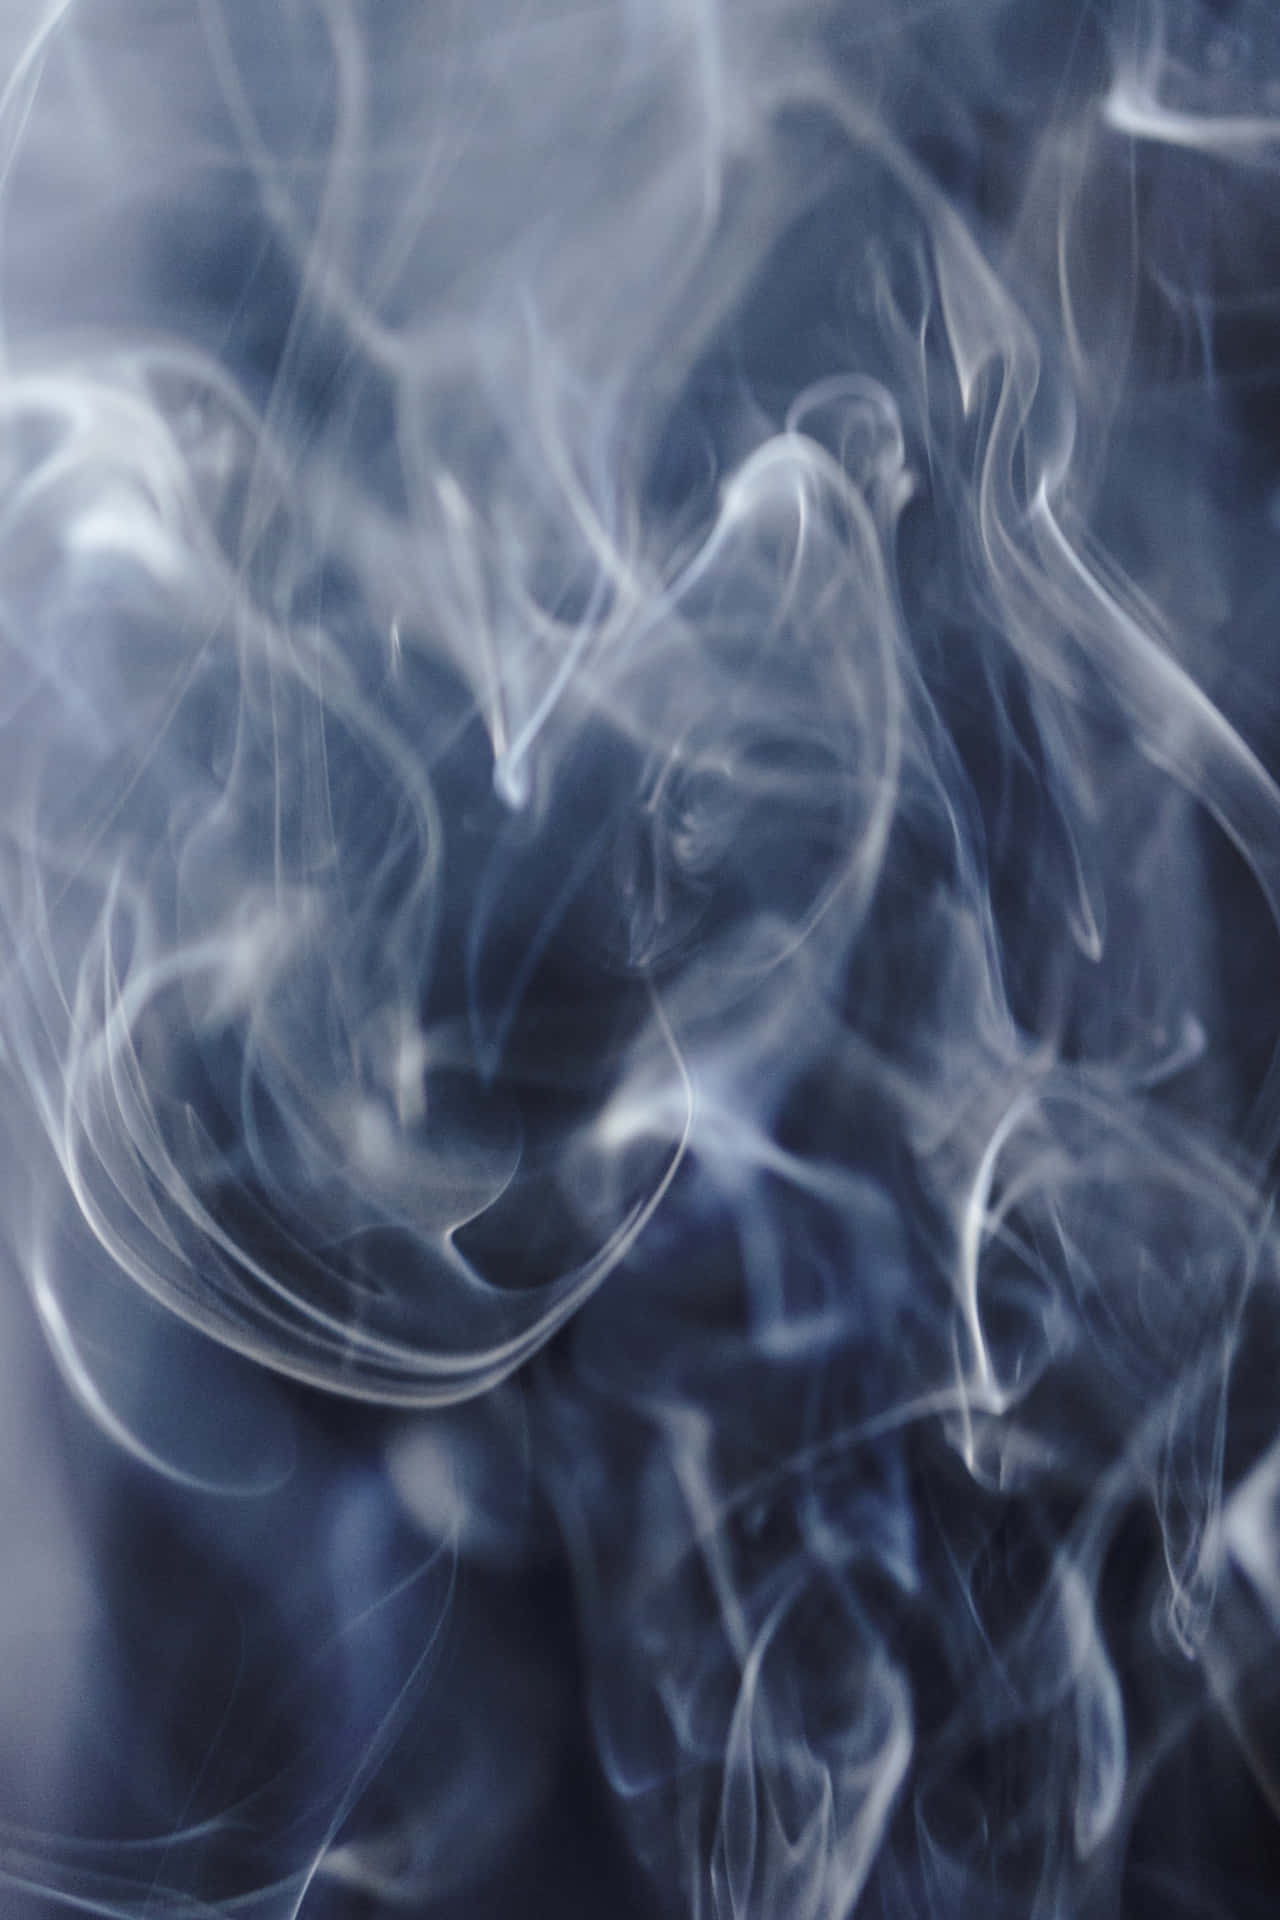 Angrib natten med imponerende stil i Cool Smoke Wallpaper